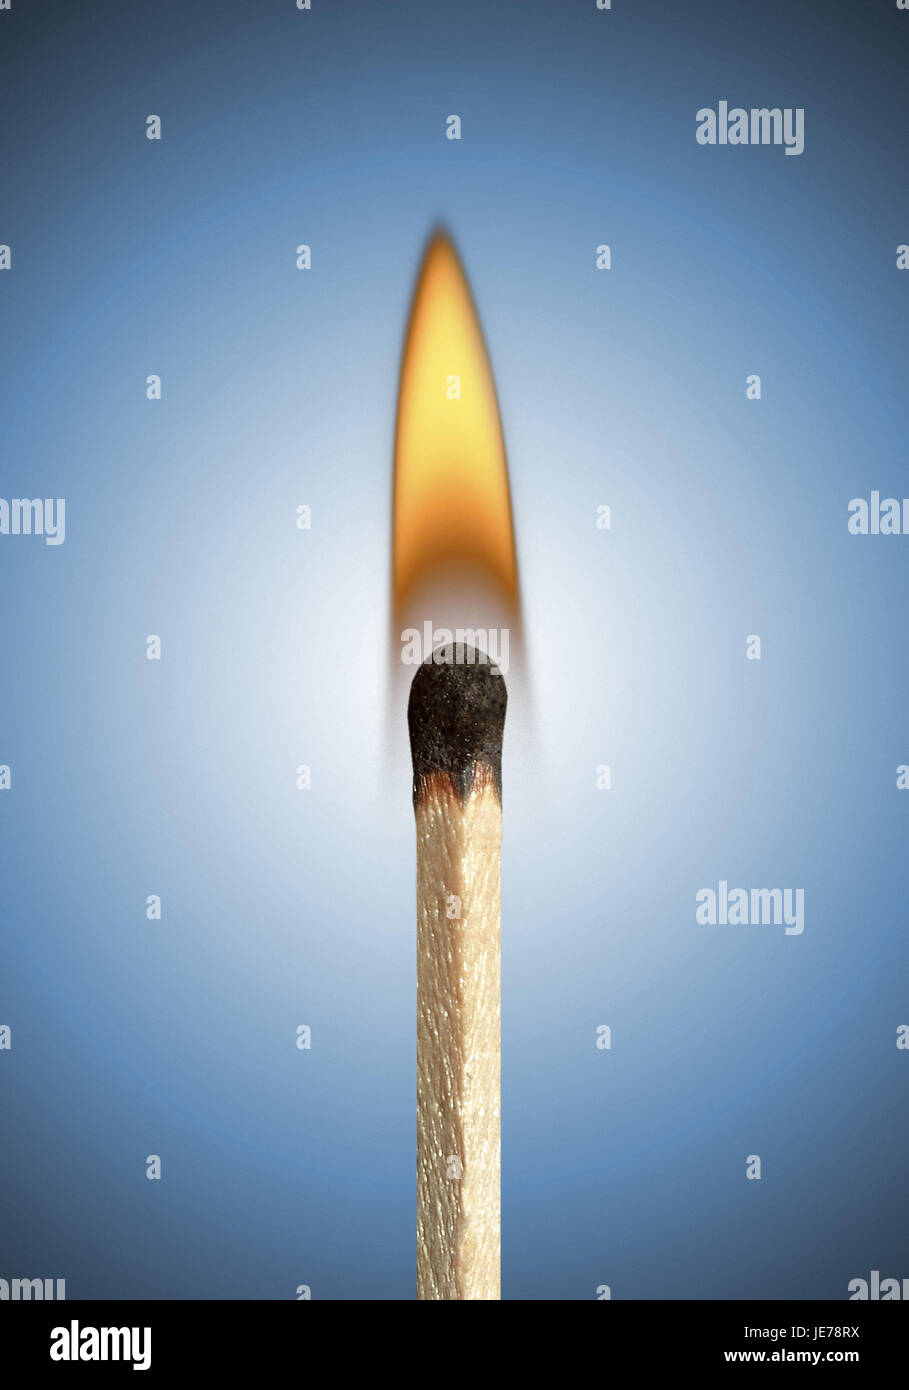 burning match, Stock Photo